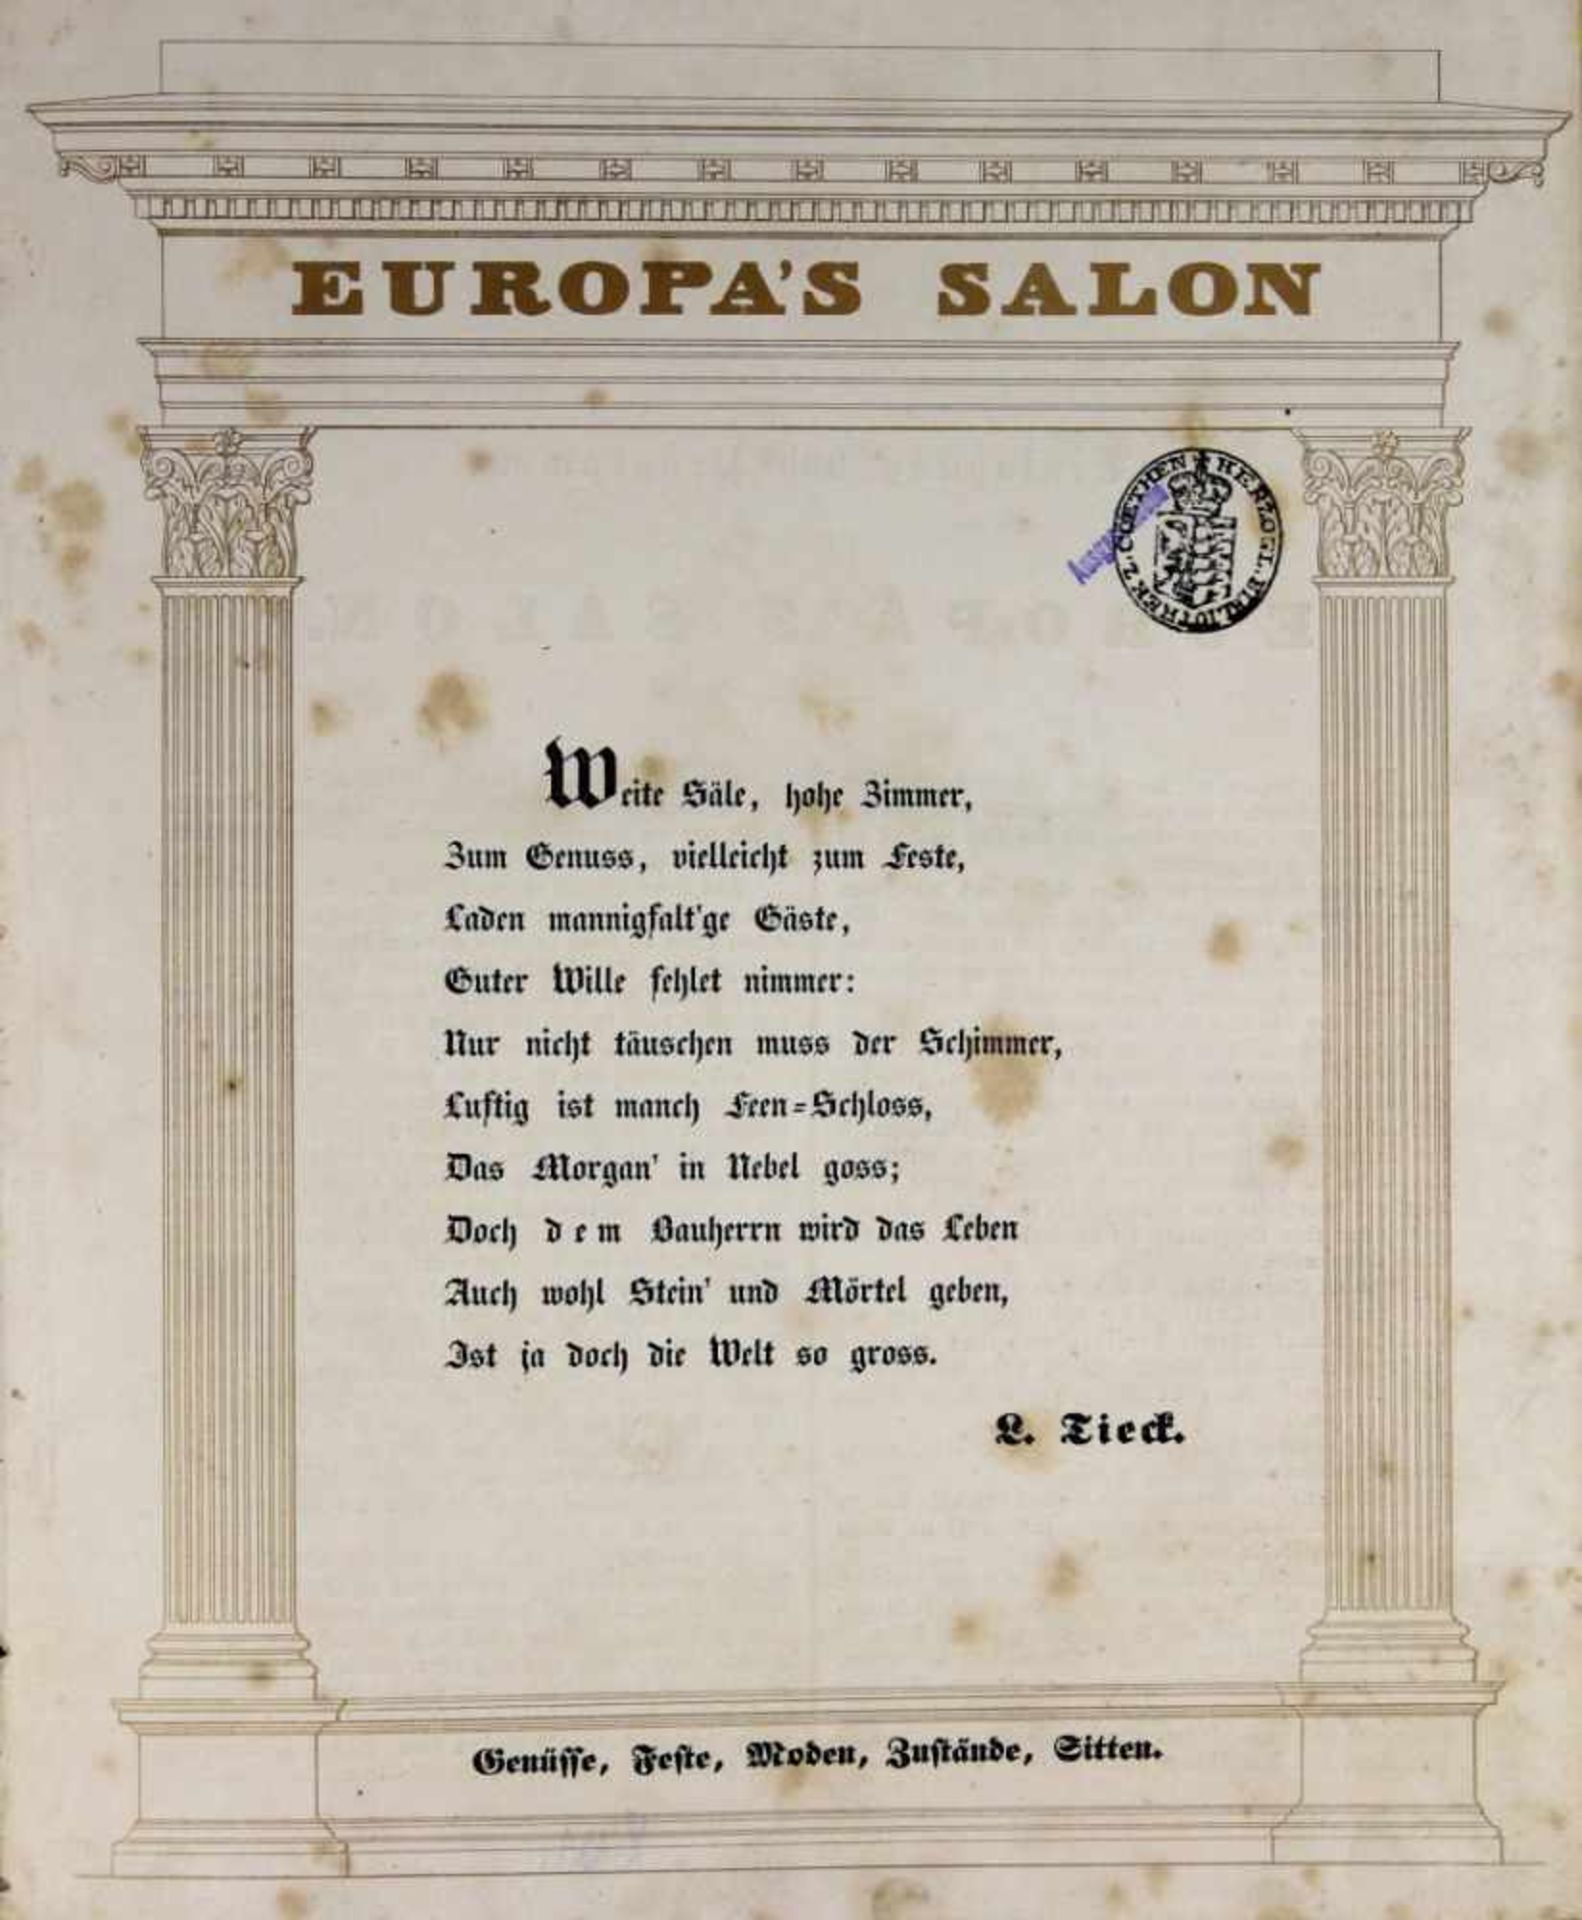 Europa's Salon. Genüsse, Feste, Moden, Zustände, Sitten. Jahrgang 1838 (Nr. 1-52) und 1839 (Nr. 1-